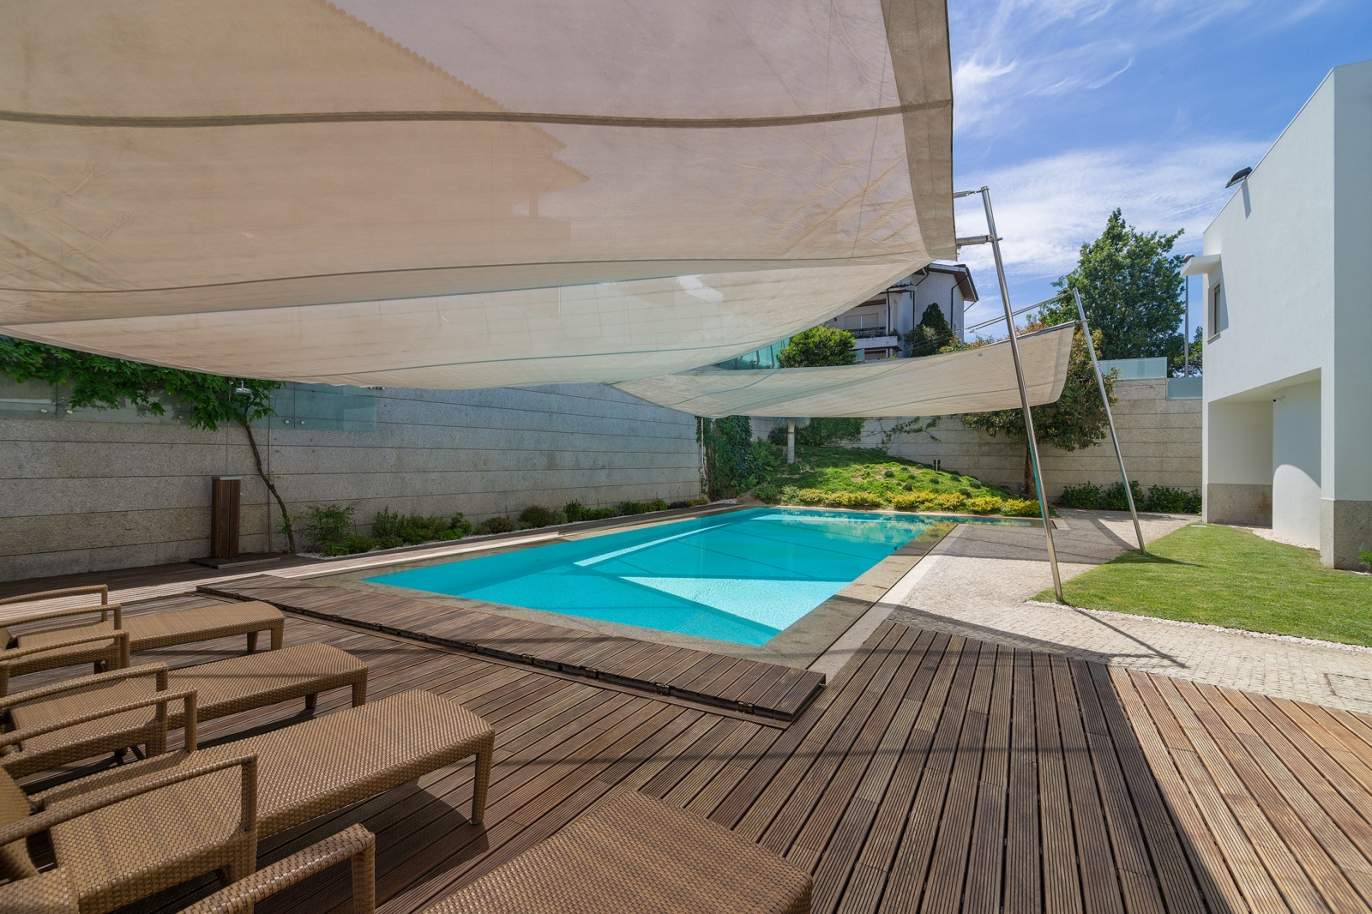 Villa mit 3 Schlafzimmern, mit Pool und Garten, zu verkaufen, in Trofa, Porto, Portugal_154944